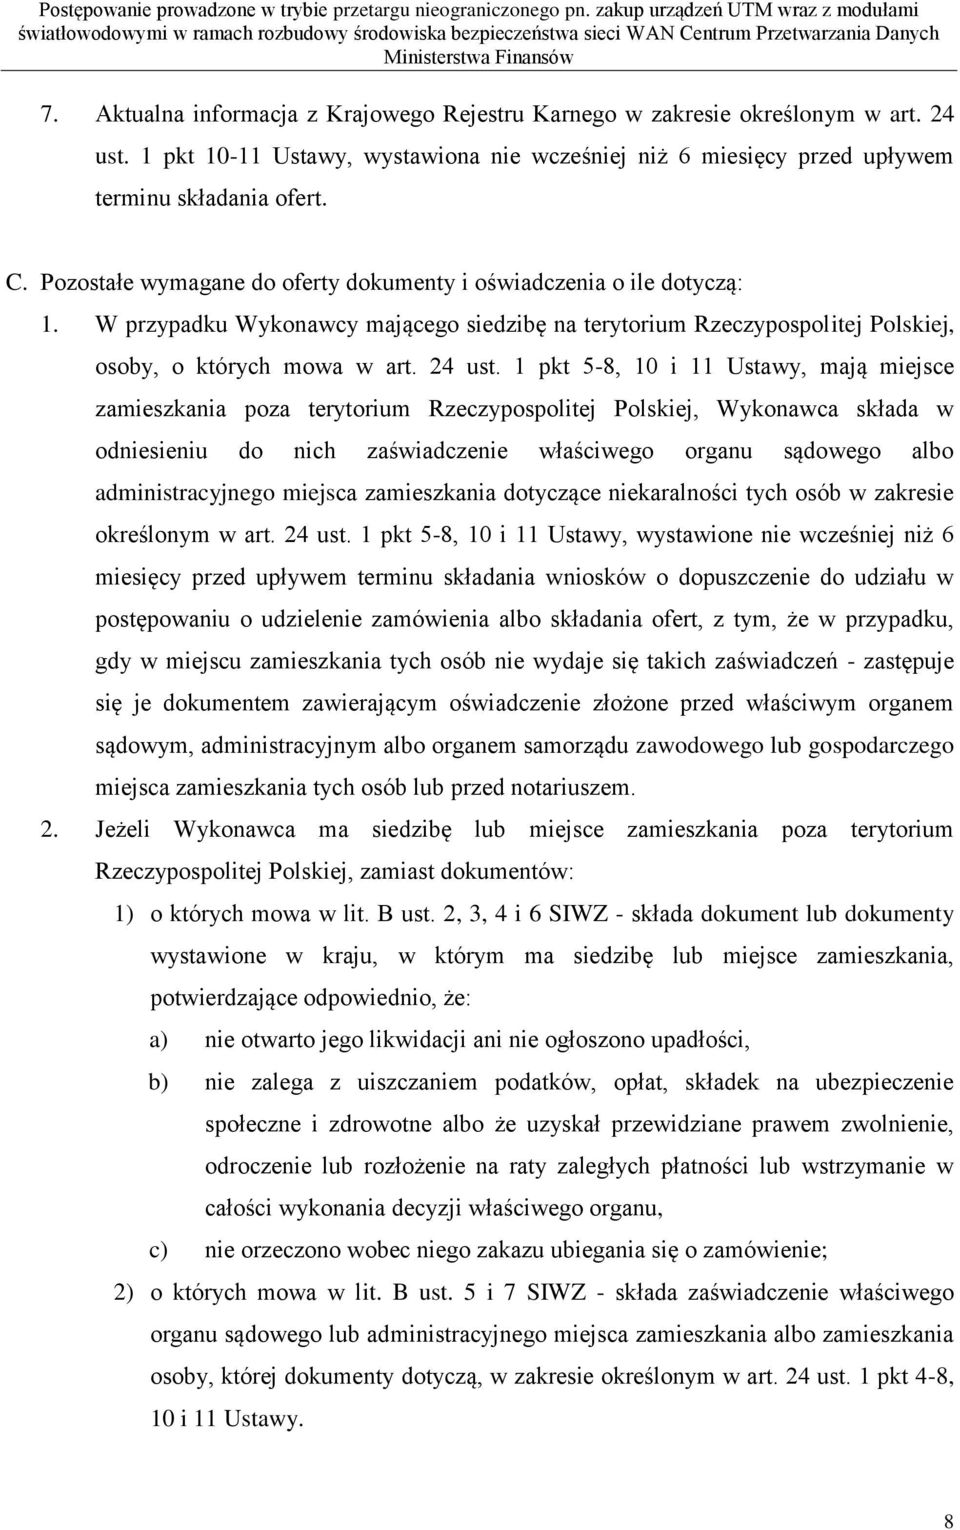 1 pkt 5-8, 10 i 11 Ustawy, mają miejsce zamieszkania poza terytorium Rzeczypospolitej Polskiej, Wykonawca składa w odniesieniu do nich zaświadczenie właściwego organu sądowego albo administracyjnego